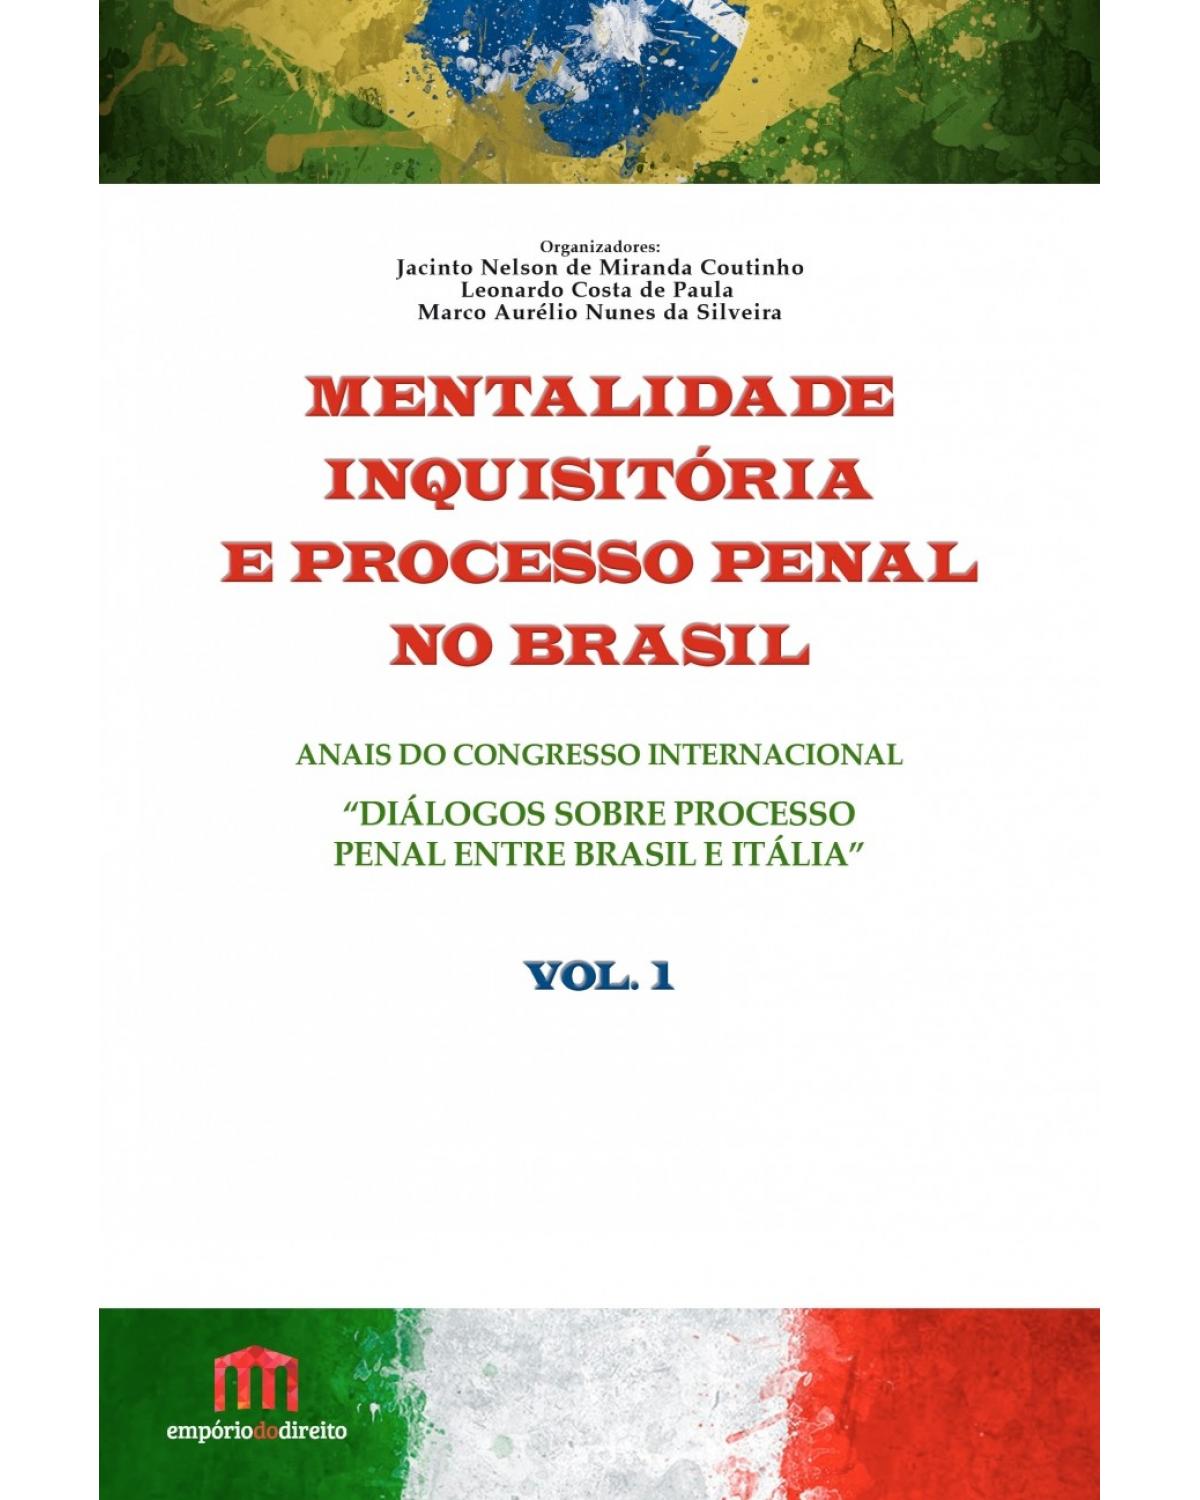 Mentalidade inquisitória e processo penal no Brasil - Volume 1:  - 1ª Edição | 2016